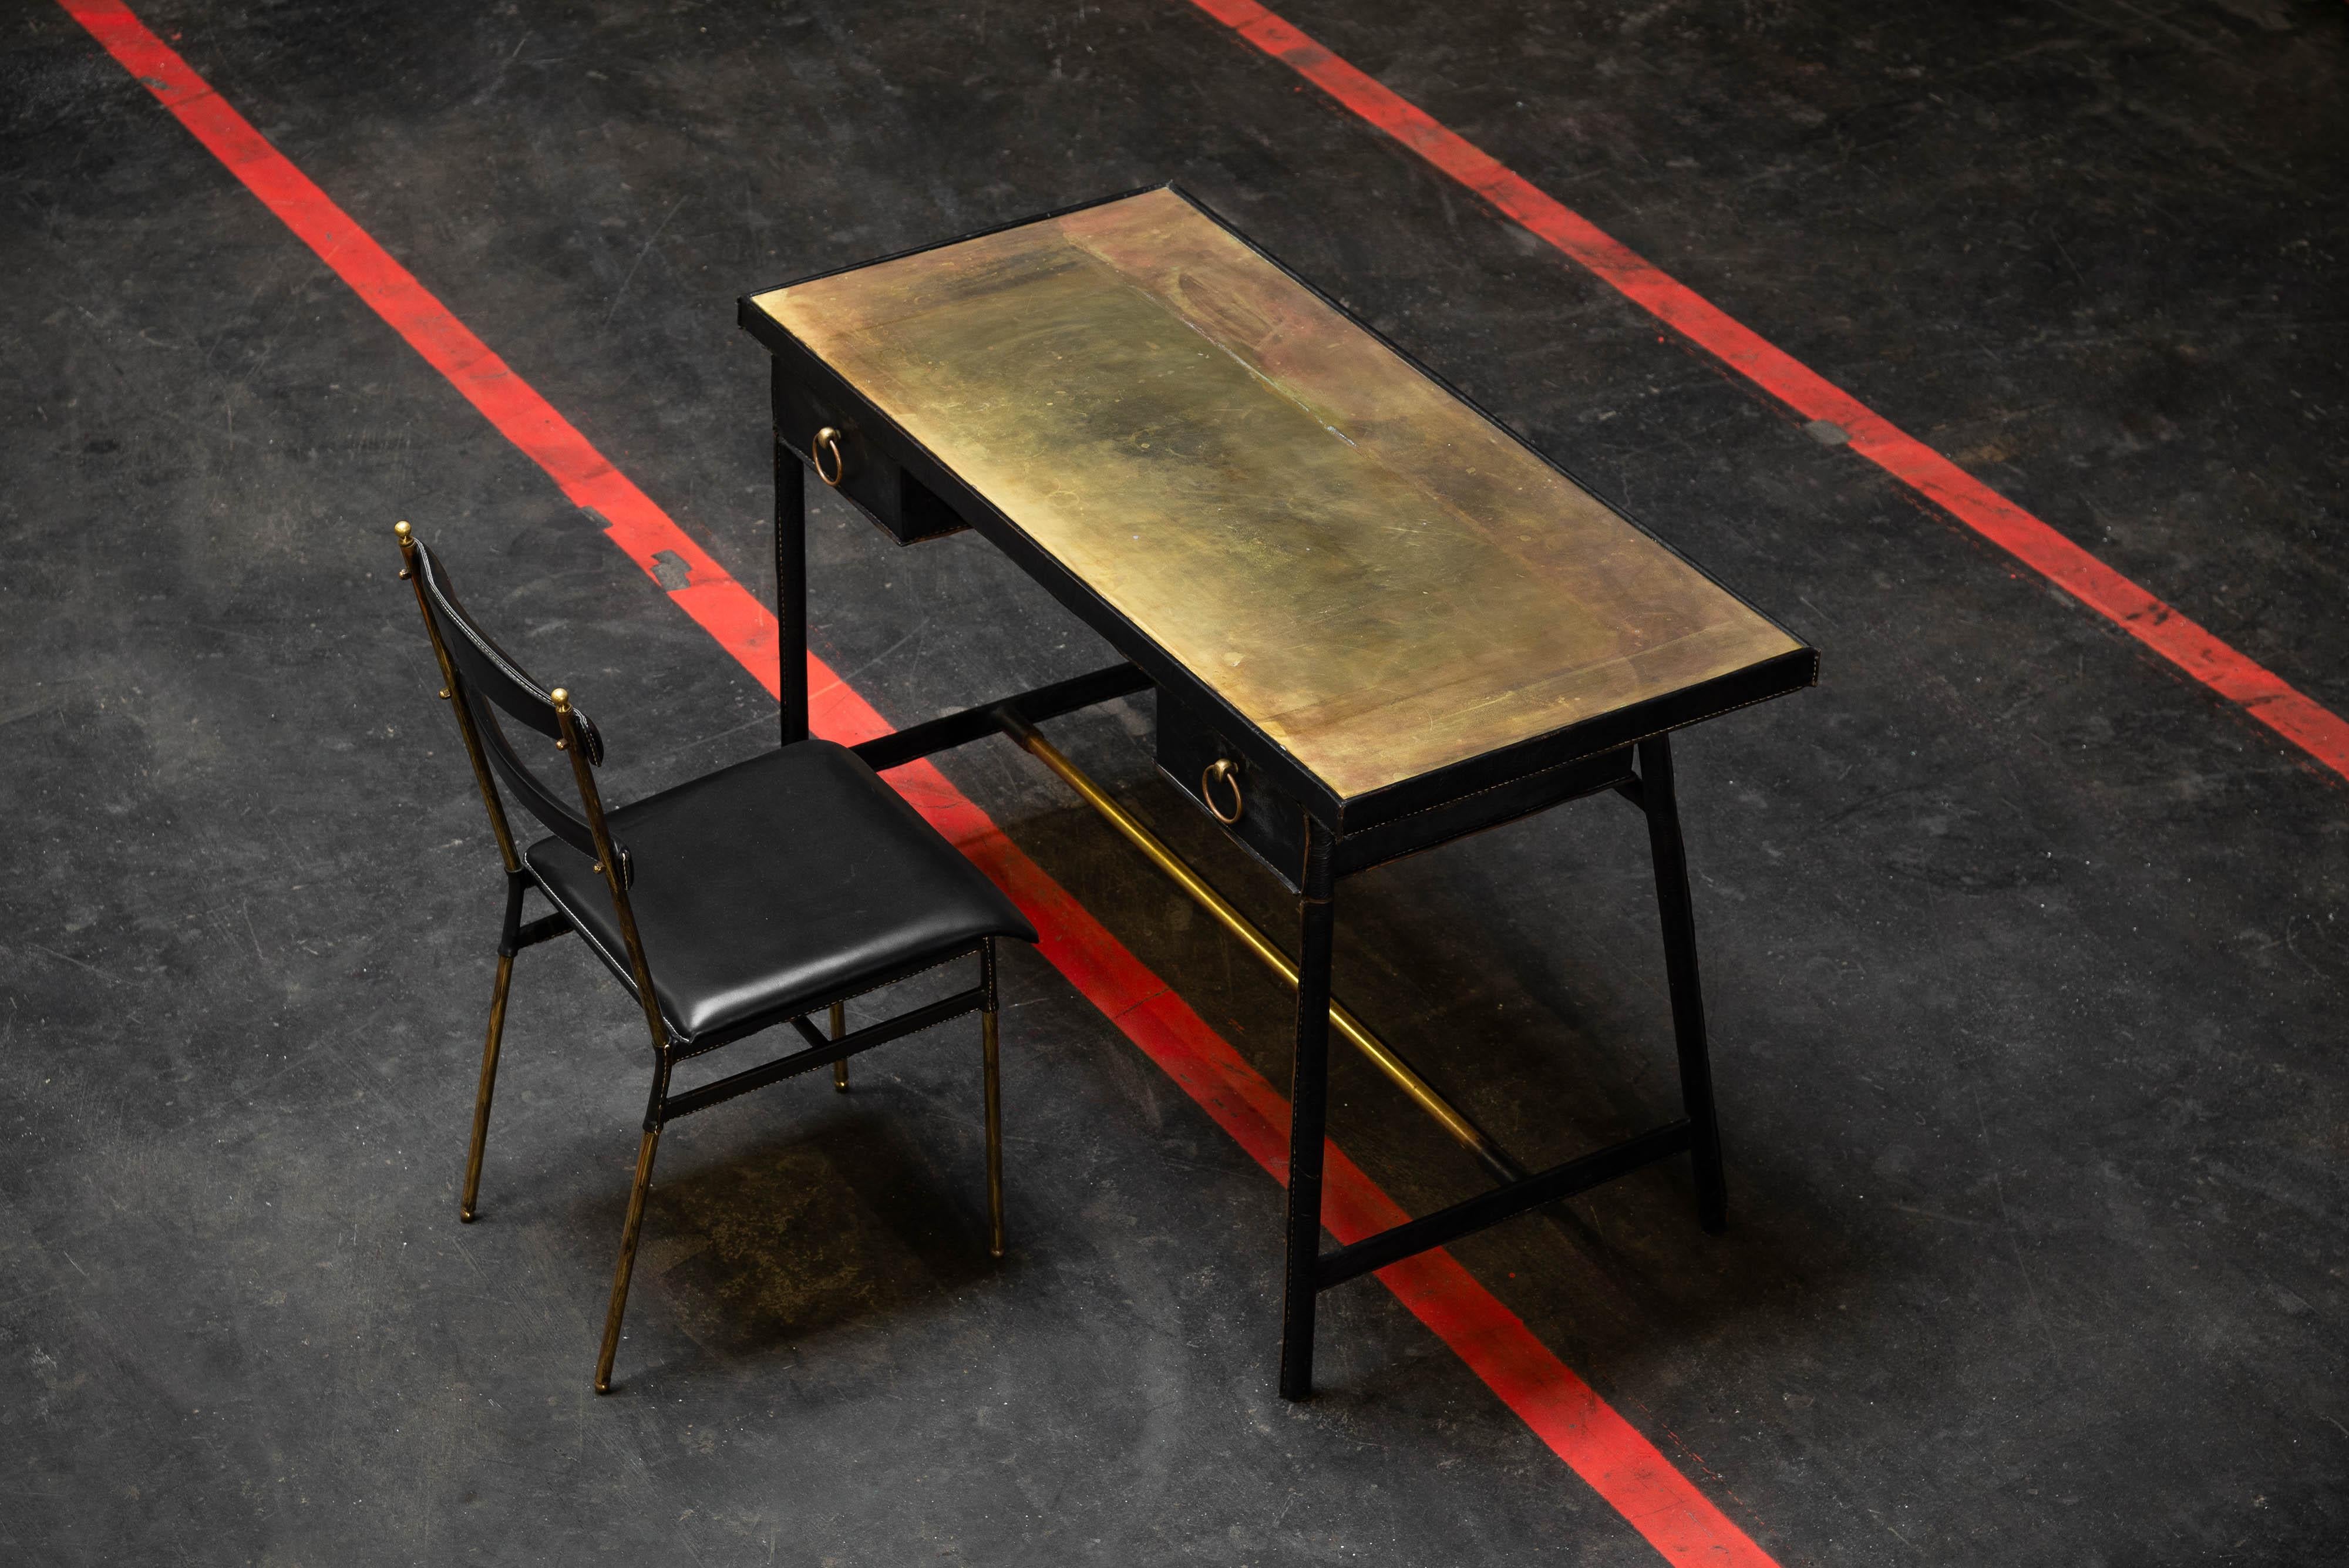 Schöner Avantgarde-Schreibtisch, entworfen von Jacques Adnet und hergestellt in seinem eigenen Atelier in Frankreich in den 1950er Jahren. Der Rahmen besteht aus massivem Messing und ist mit weichem schwarzem Leder umhüllt, was ihm ein edles und